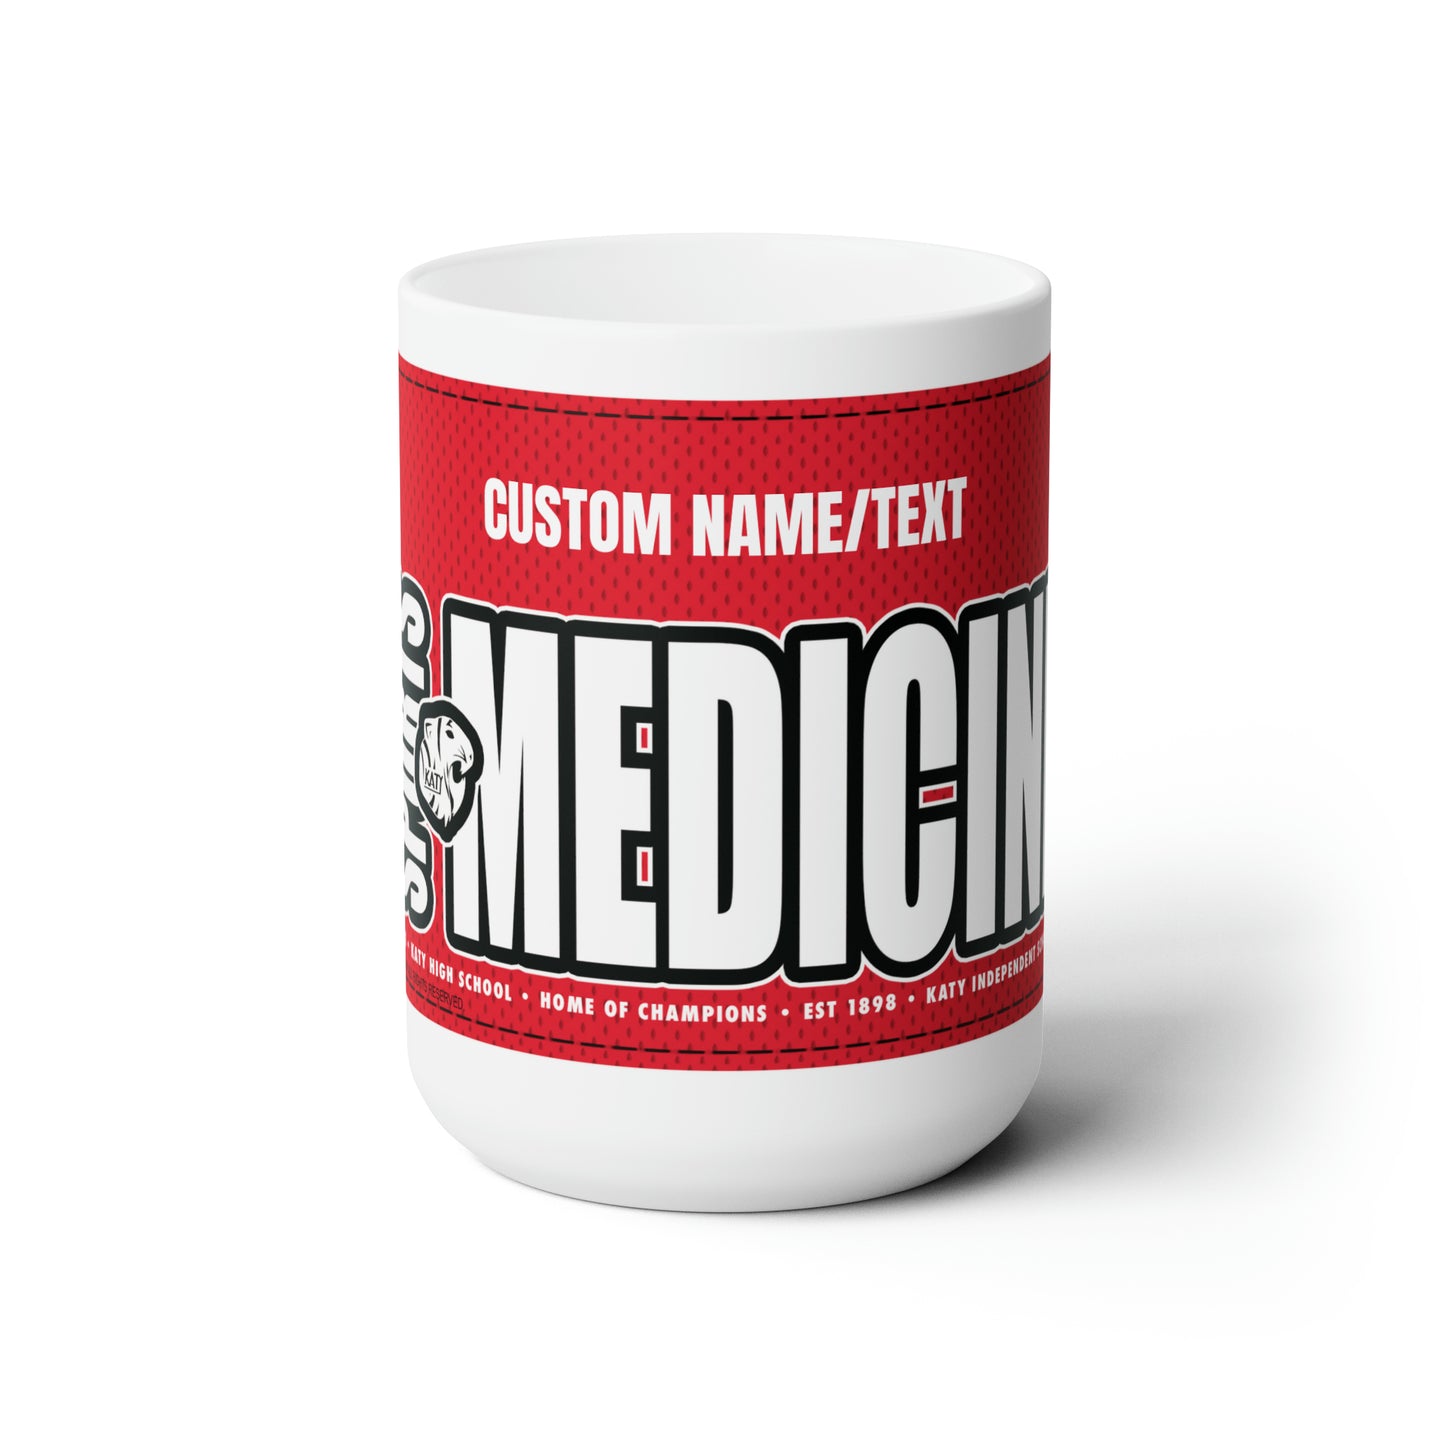 KHS - Sports Medicine Custom Mug